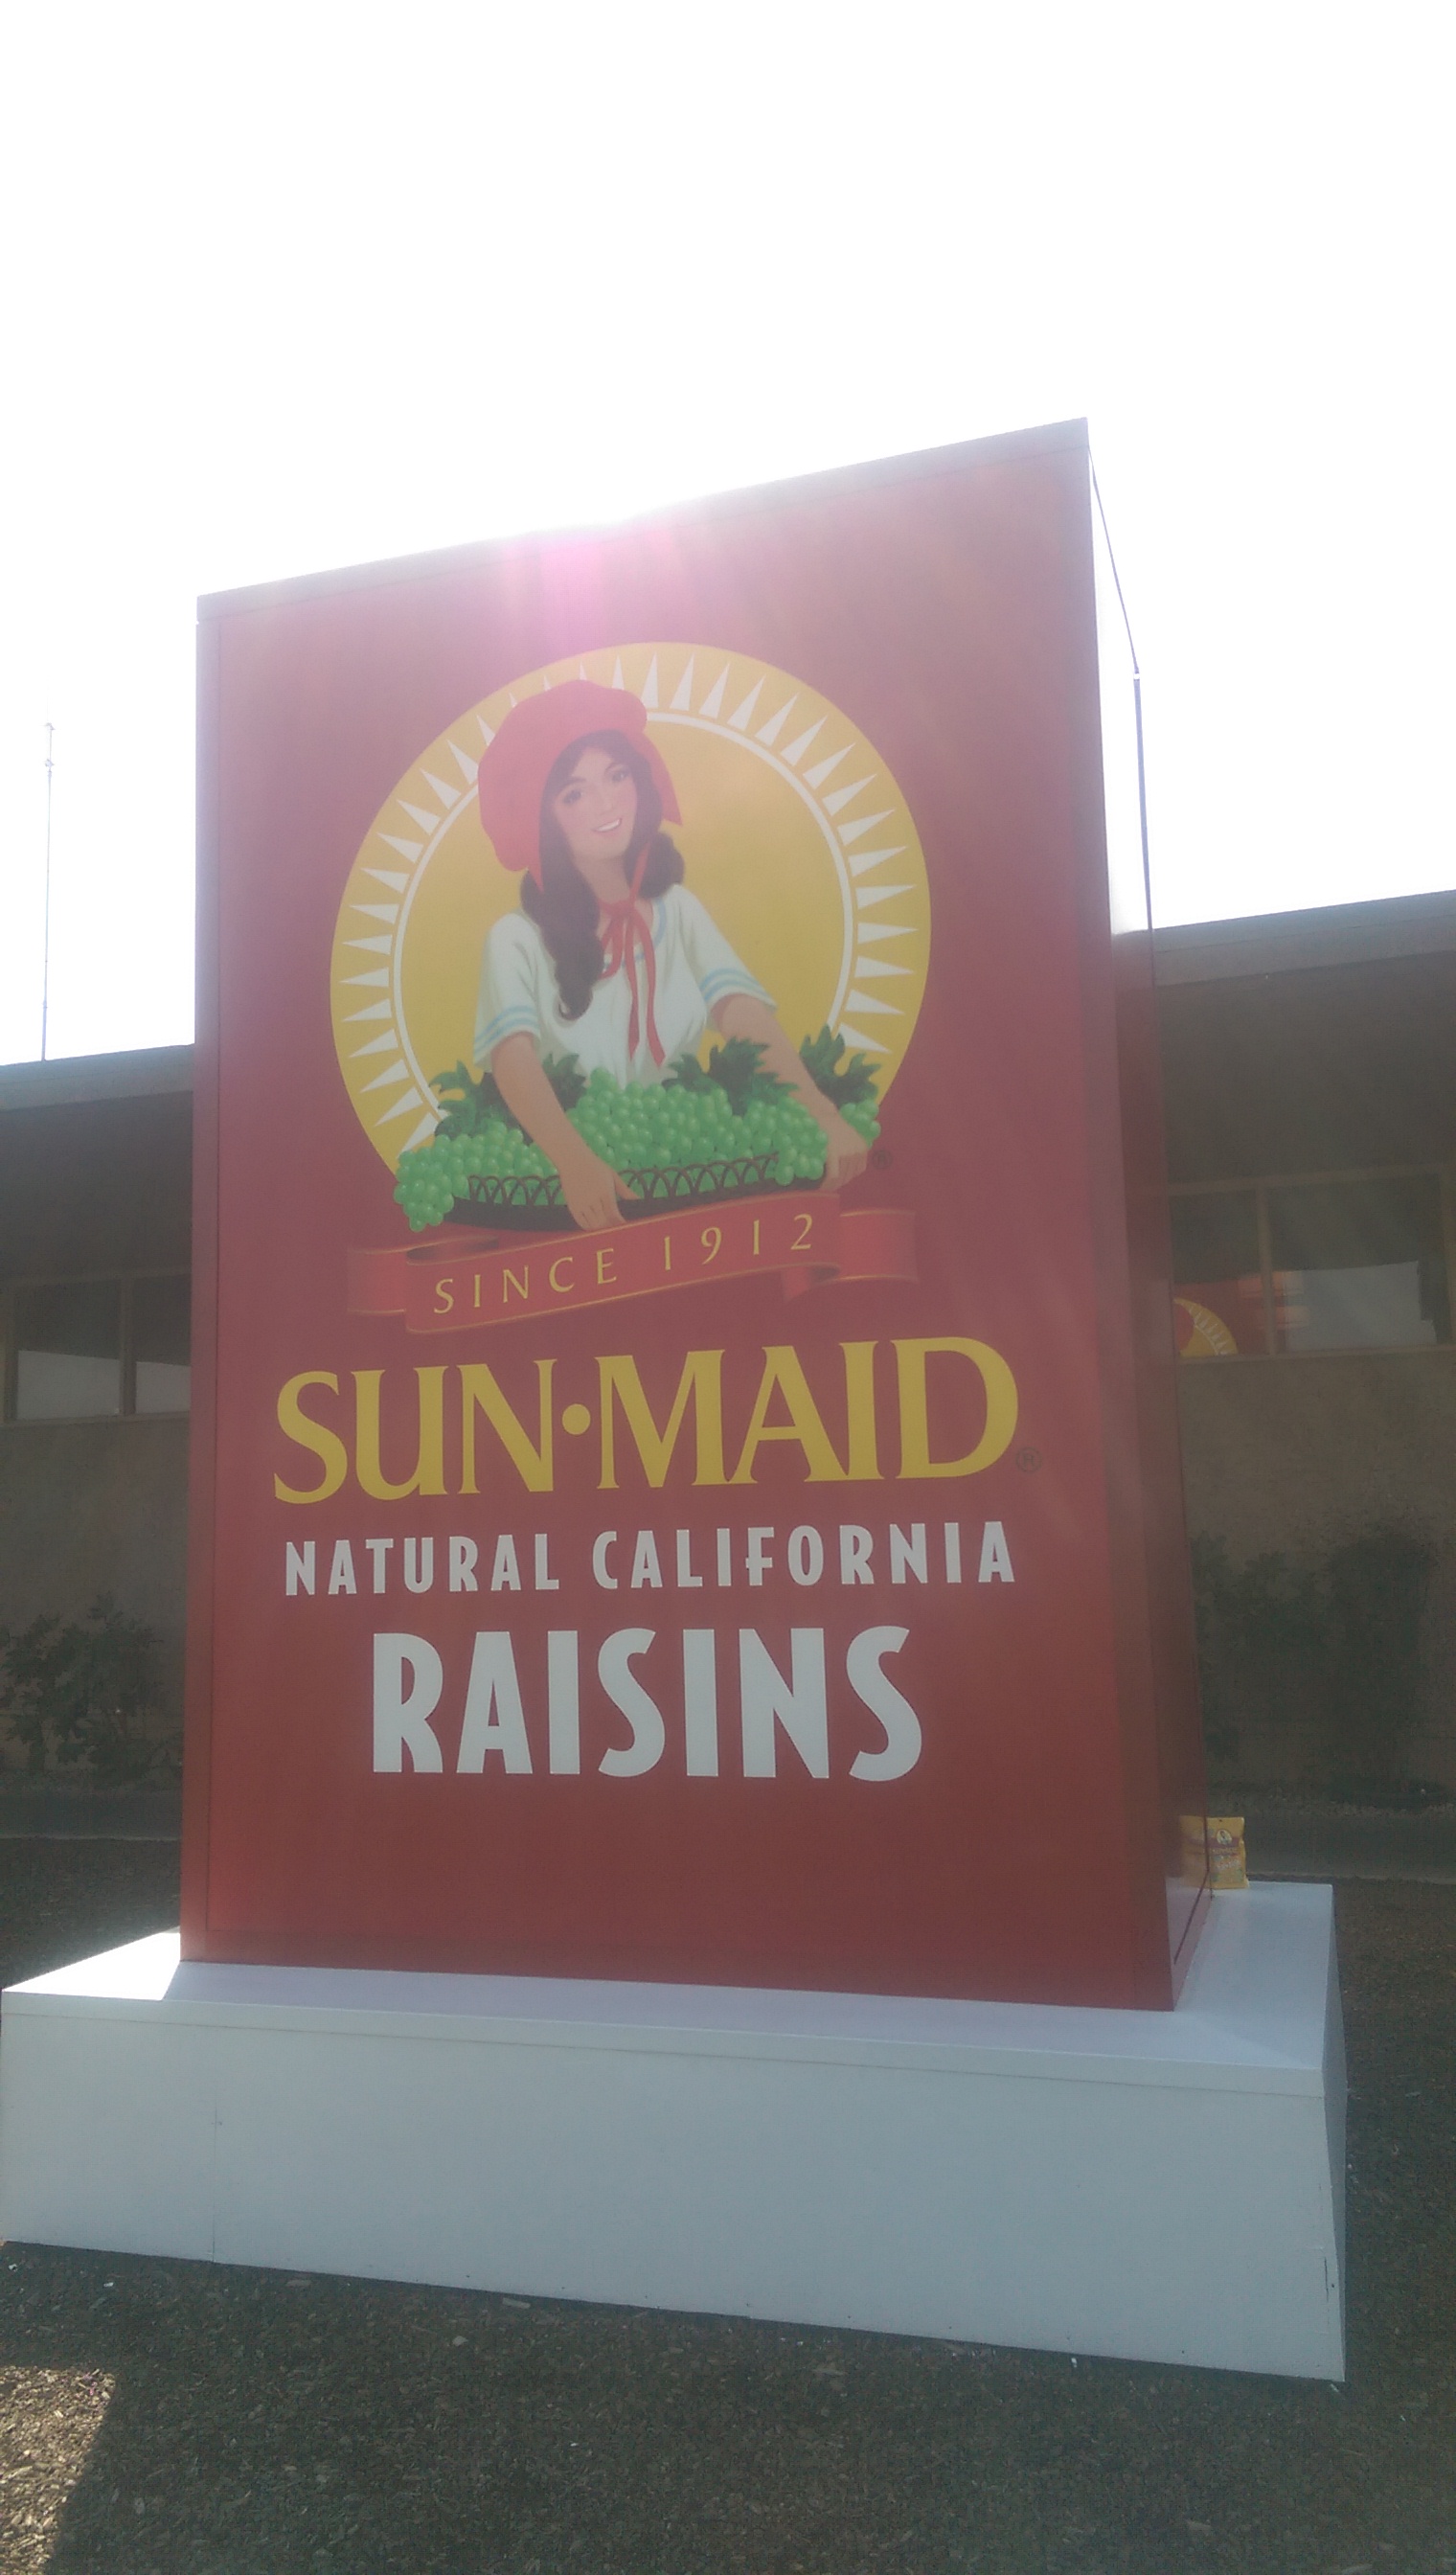 凑巧的是美国著名的sunmaid公司就位于我们午餐地点的附近。sunmaid生产各式各样的“干货”，比如葡萄干…